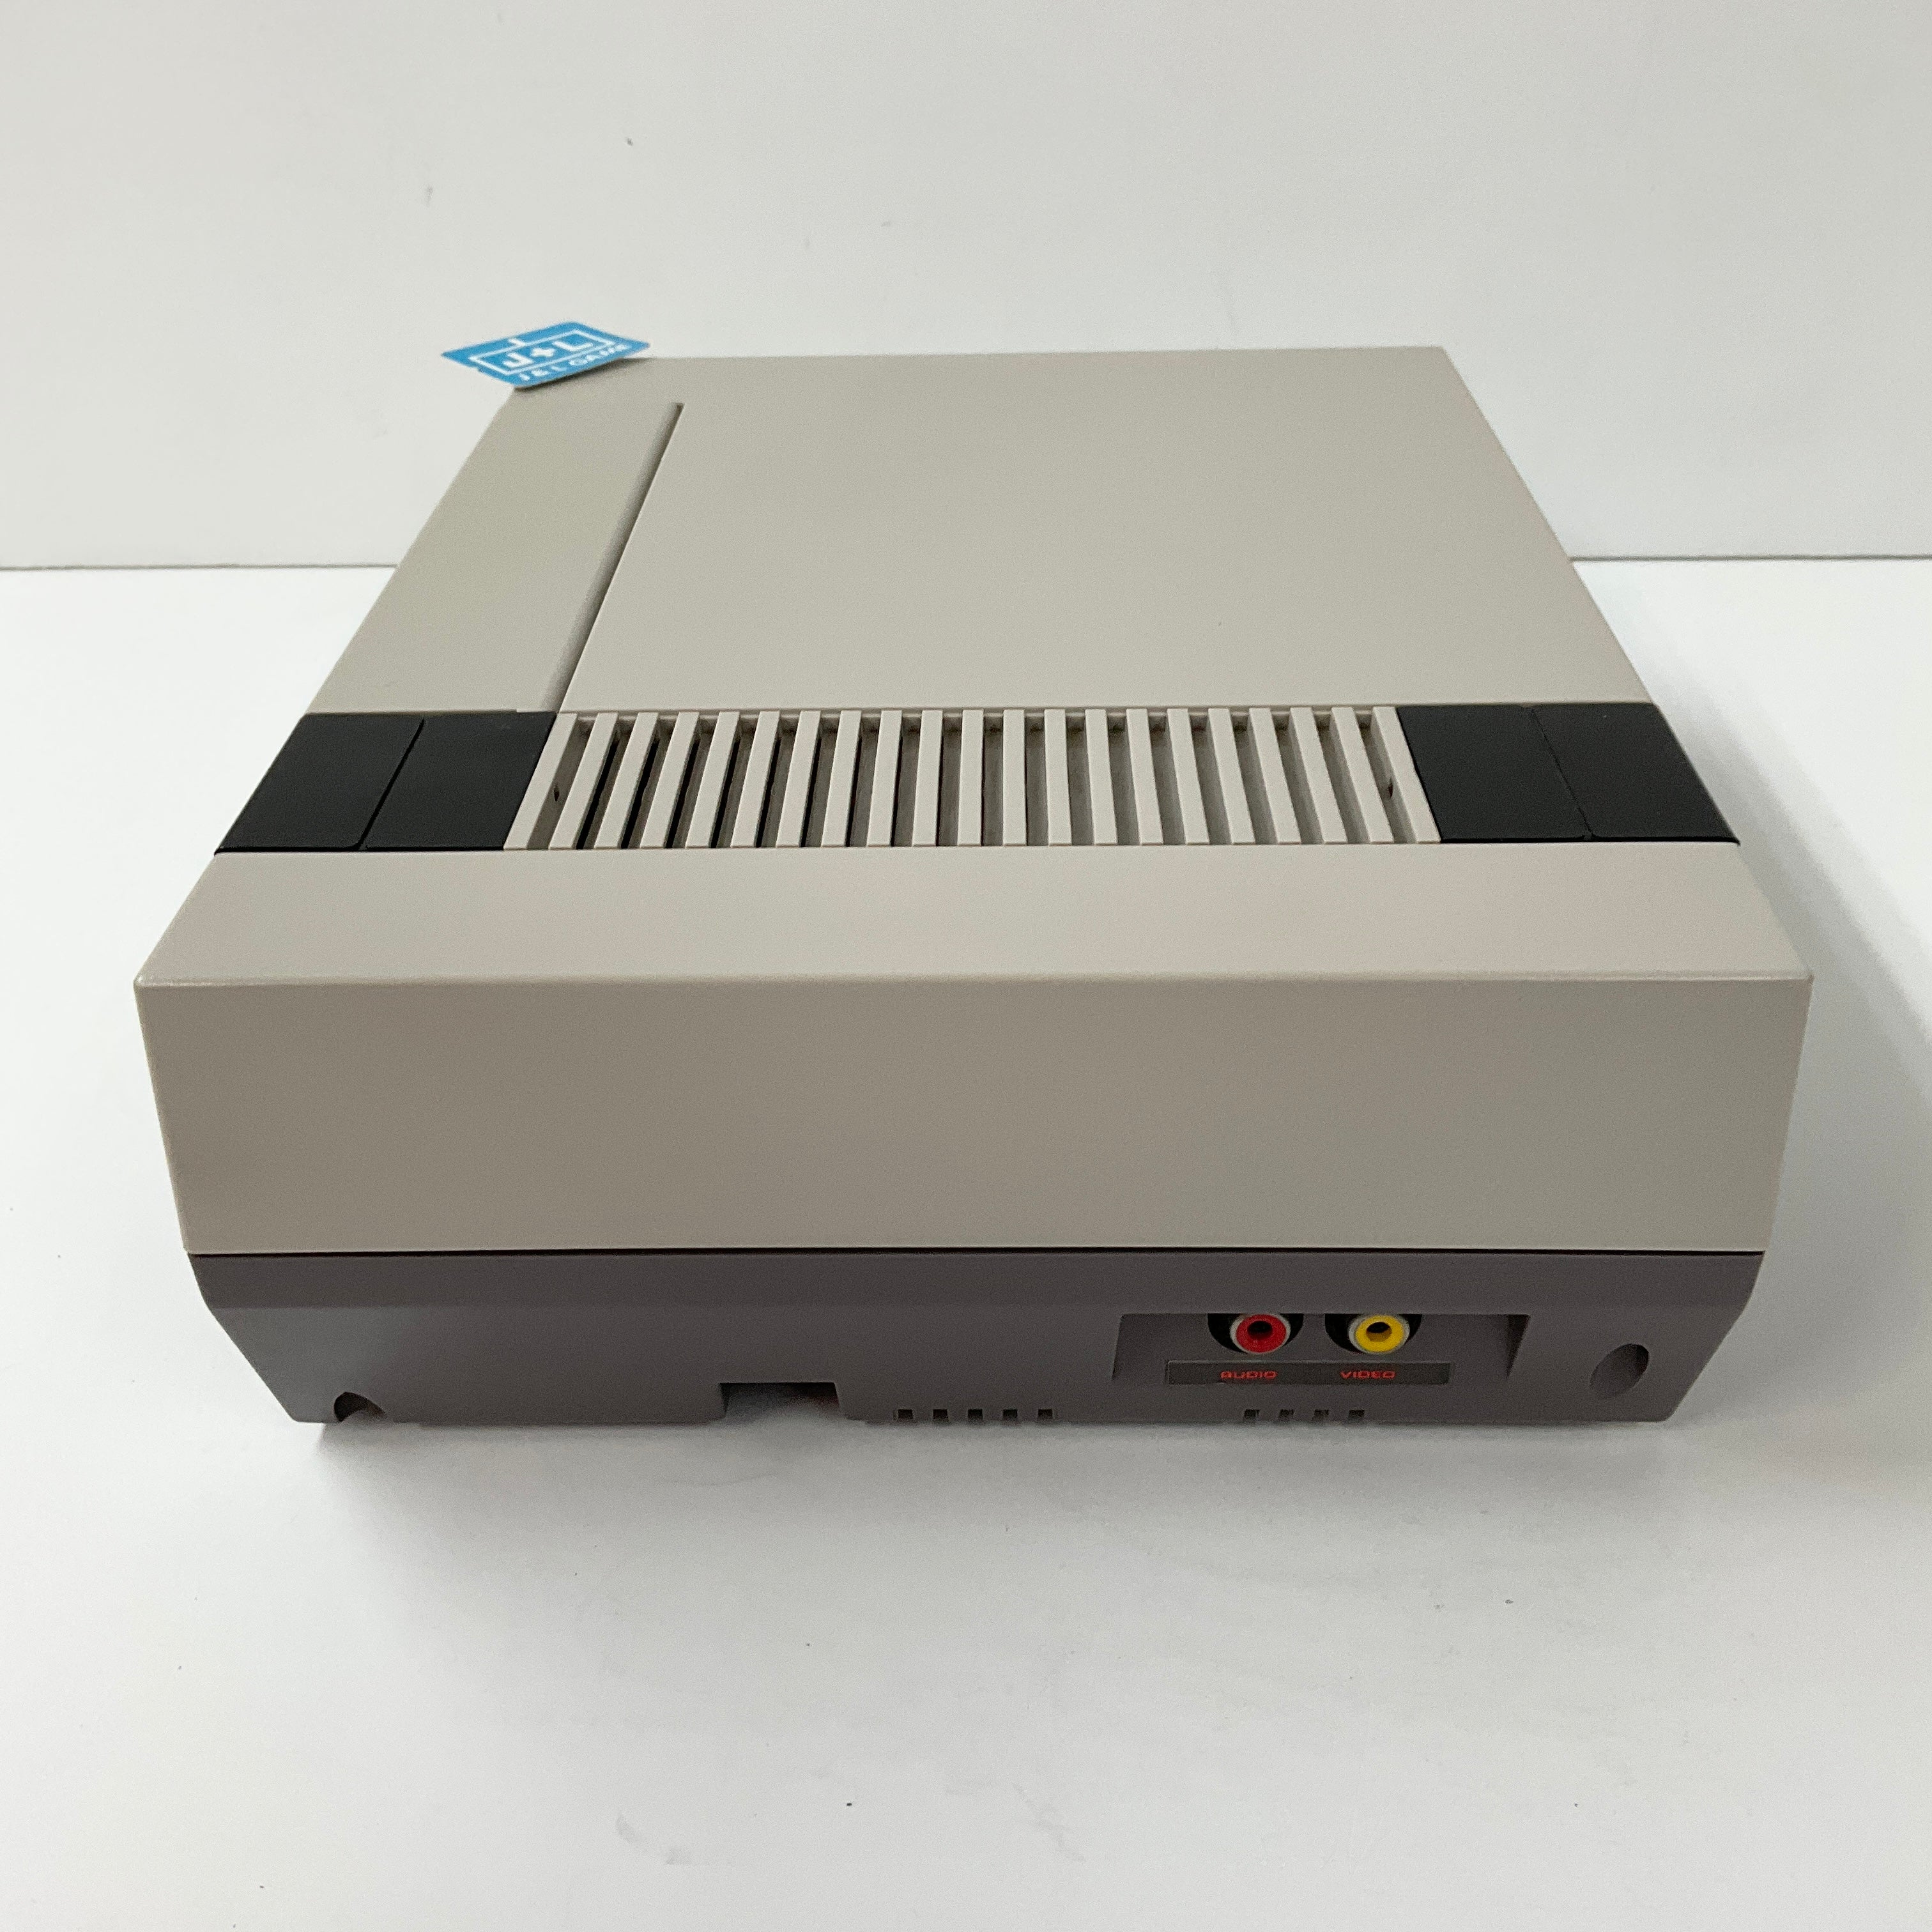 Nintendo Entertainment System Action Set - (NES) Nintendo Entertainment System [Pre-Owned] Consoles Alcon Laboratories, Inc   